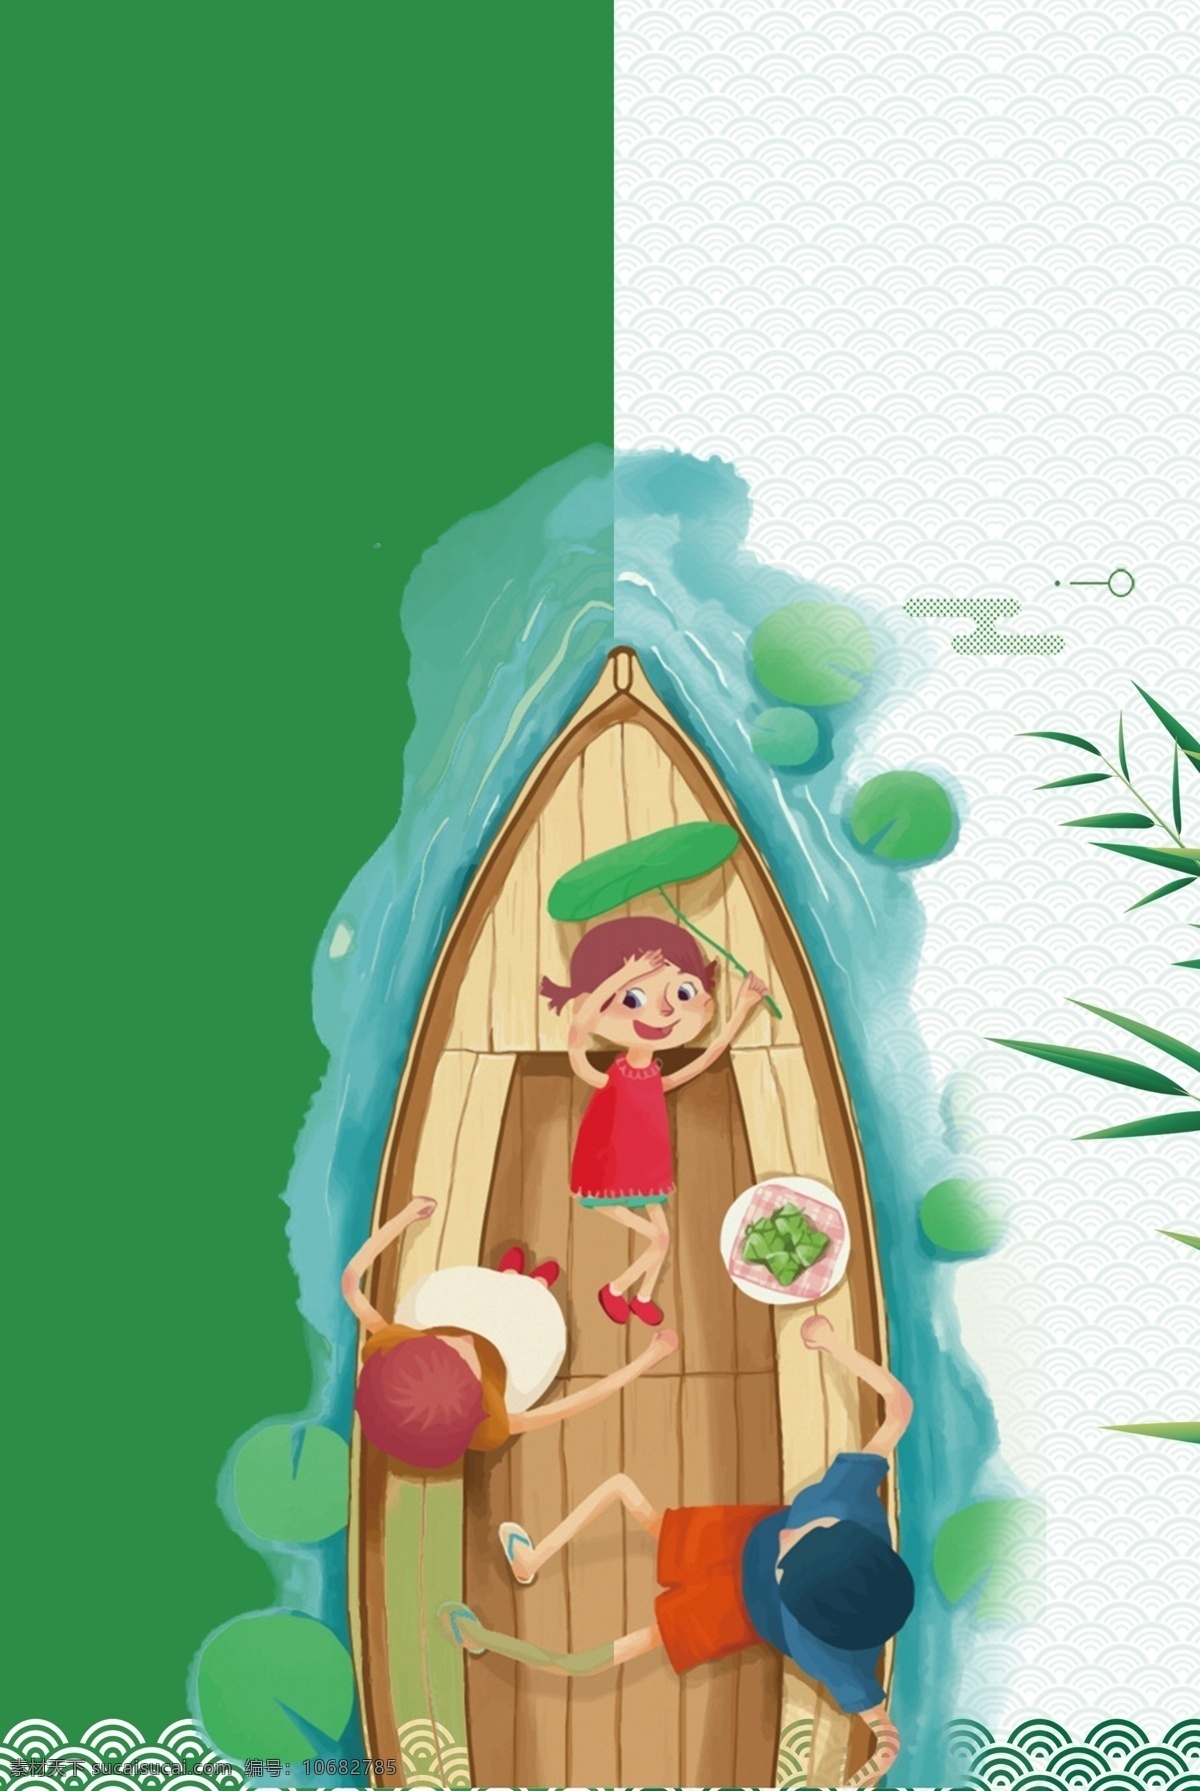 绿色 白色 相间 端午节 海报 背景 竹子 复古 中国风 文艺 卡通 手绘 质感 龙舟